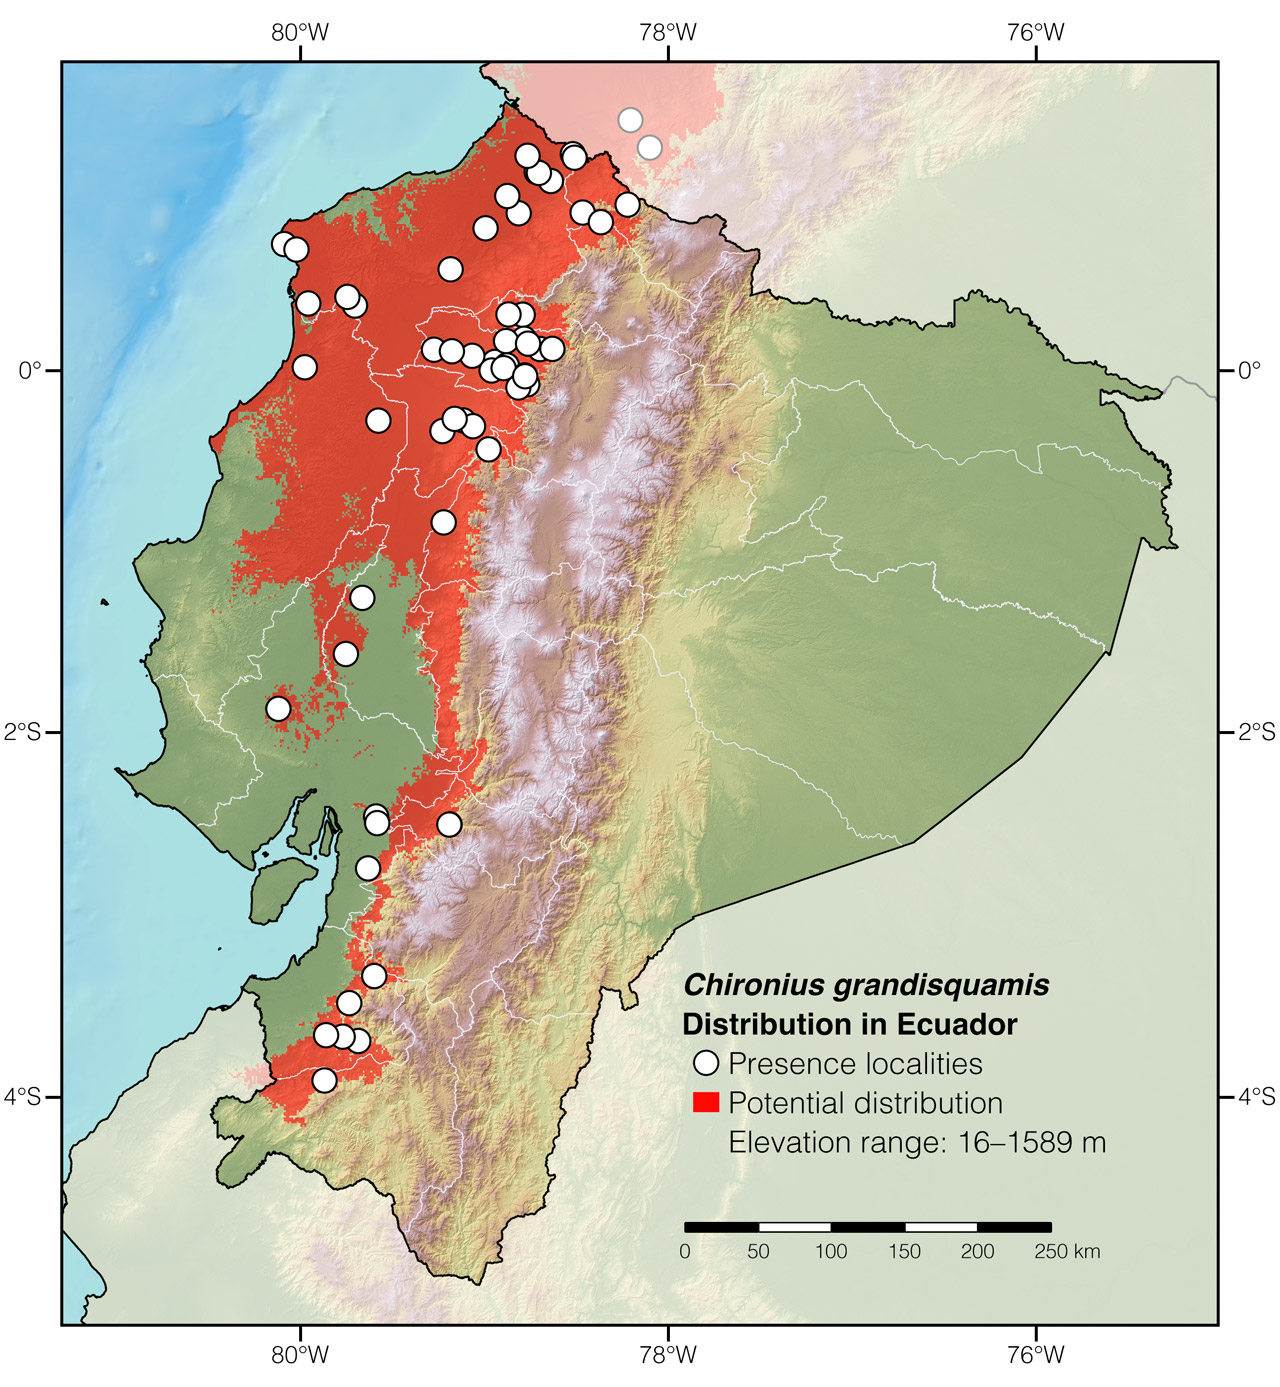 Distribution of Chironius grandisquamis in Ecuador